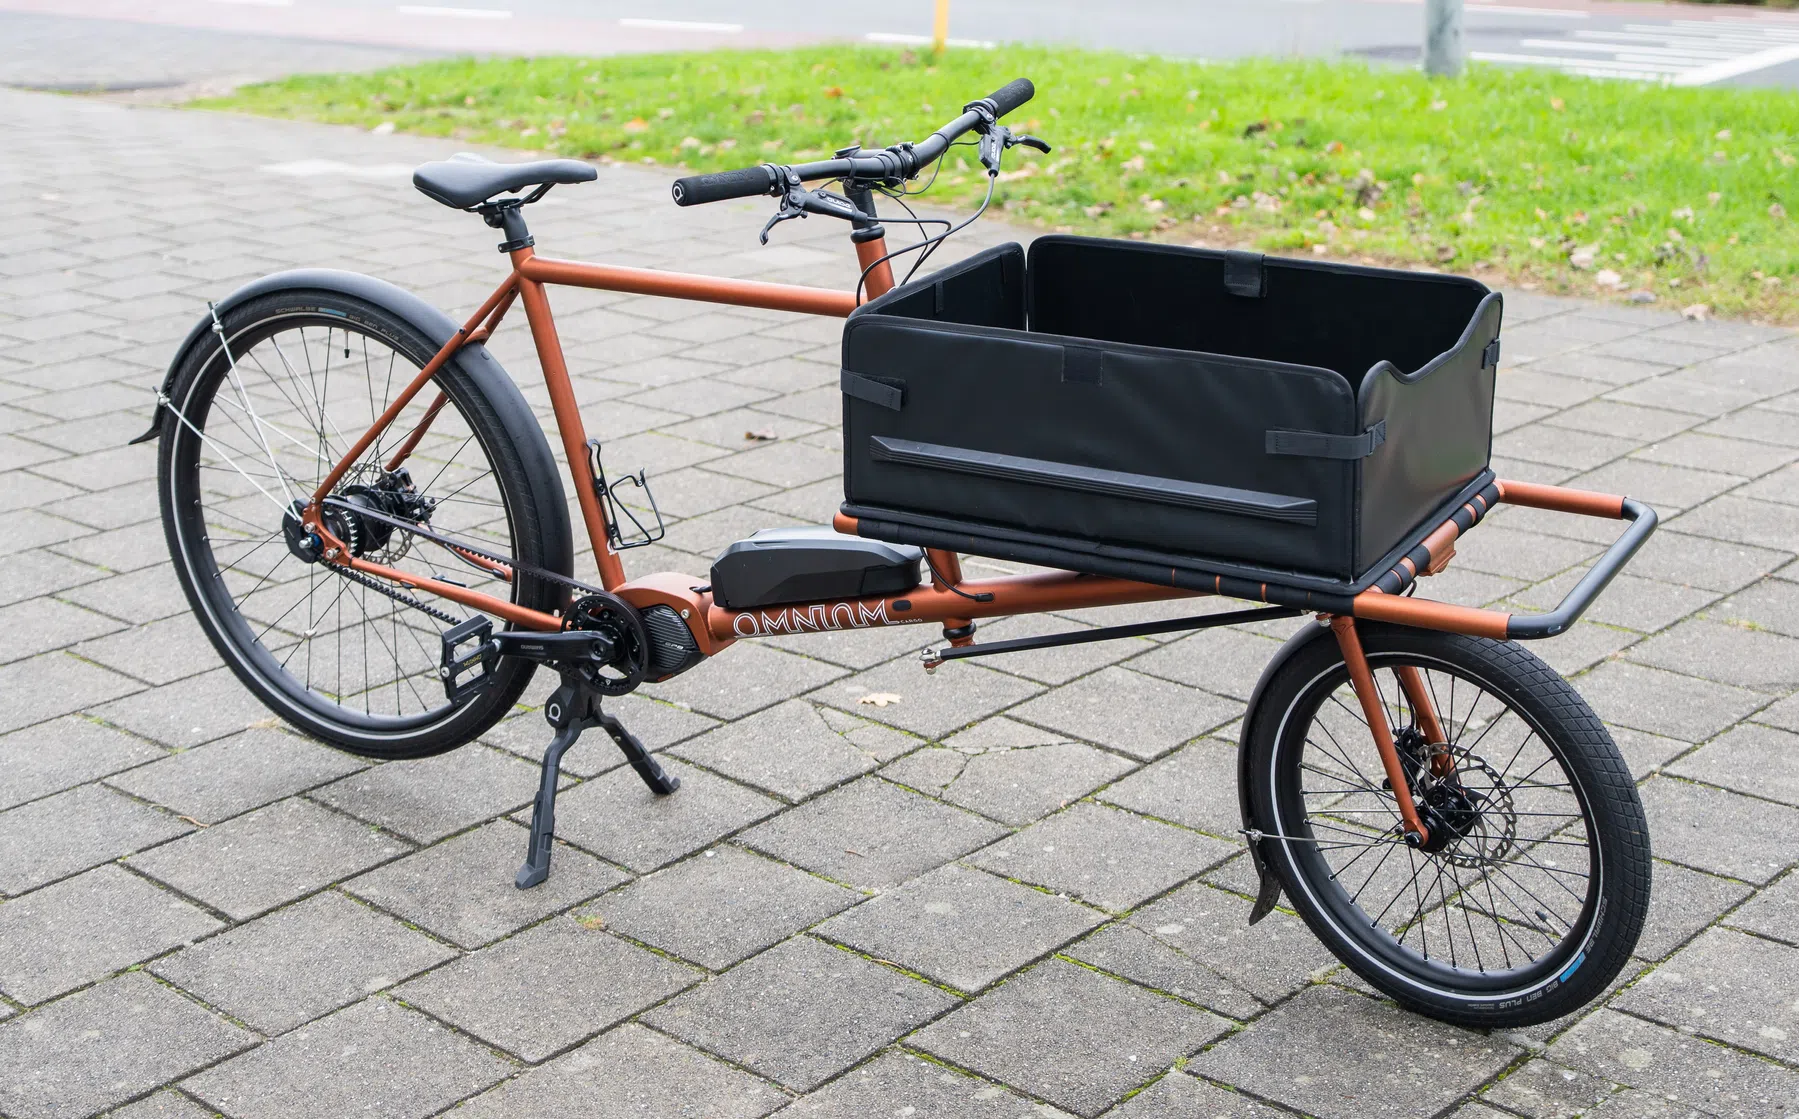 Getest: elektrische bakfiets fietst bijna net zo lekker als een e-bike